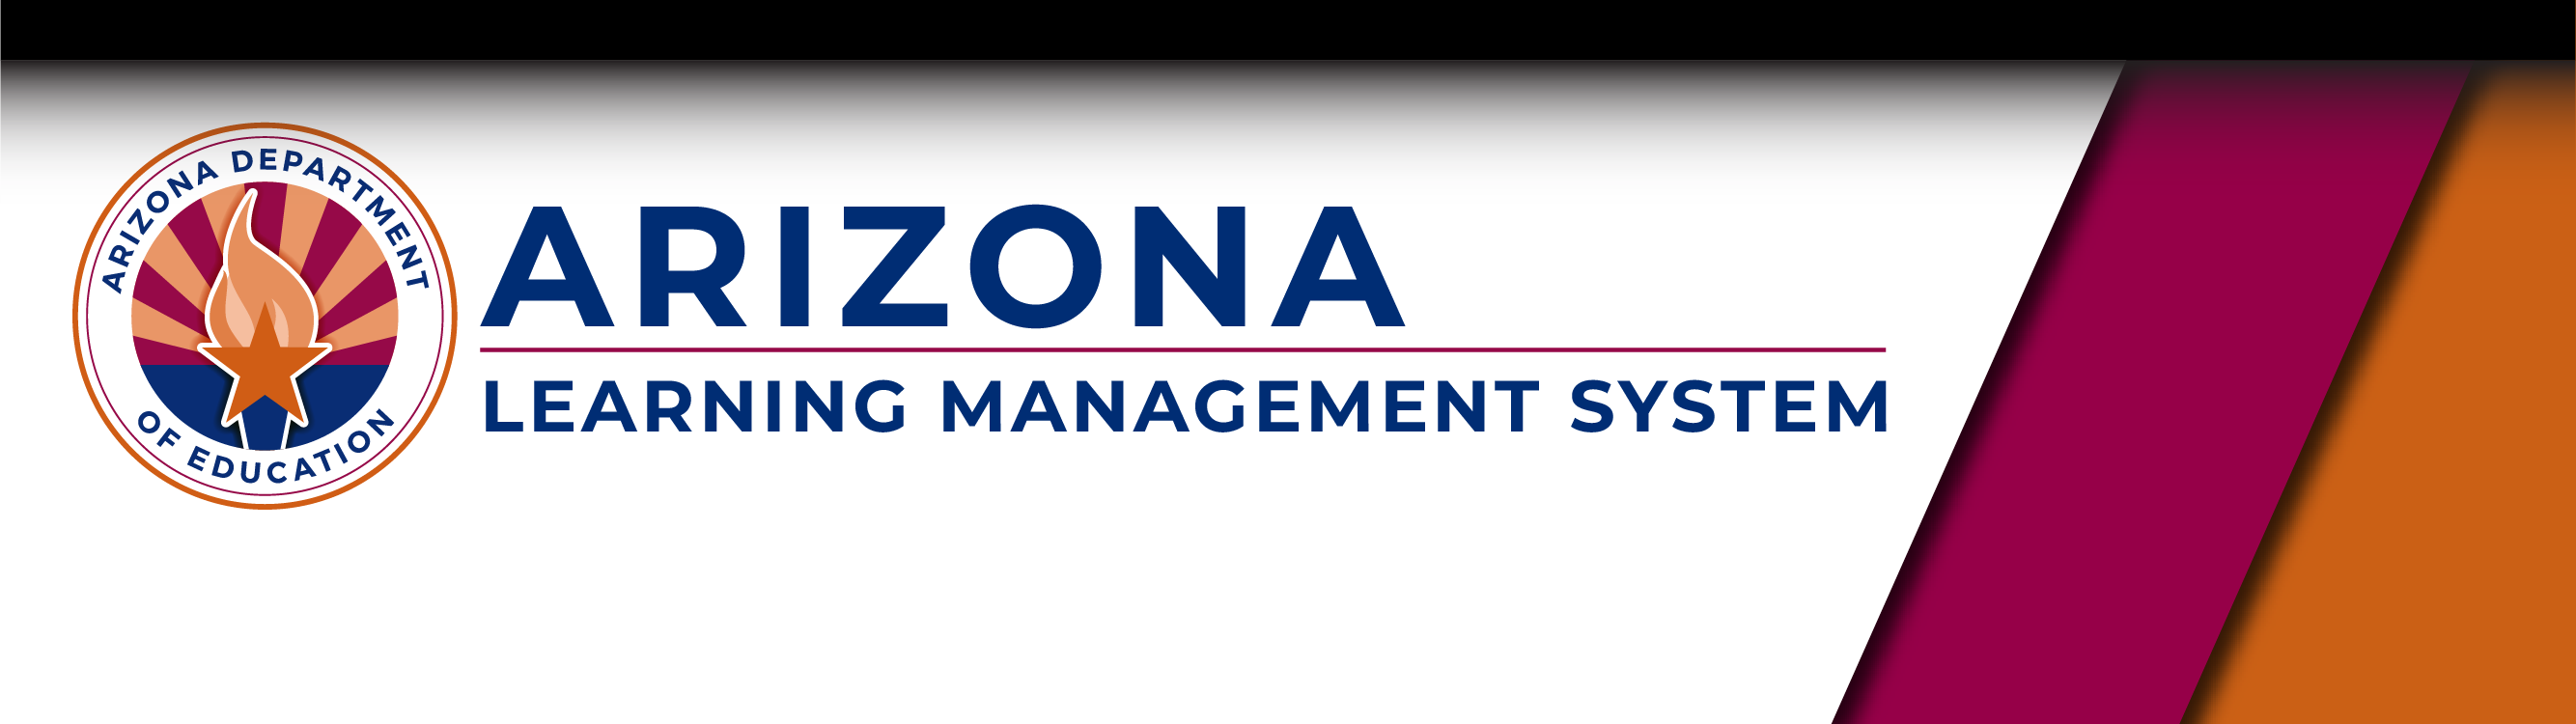 Arizona Learning Management System logo